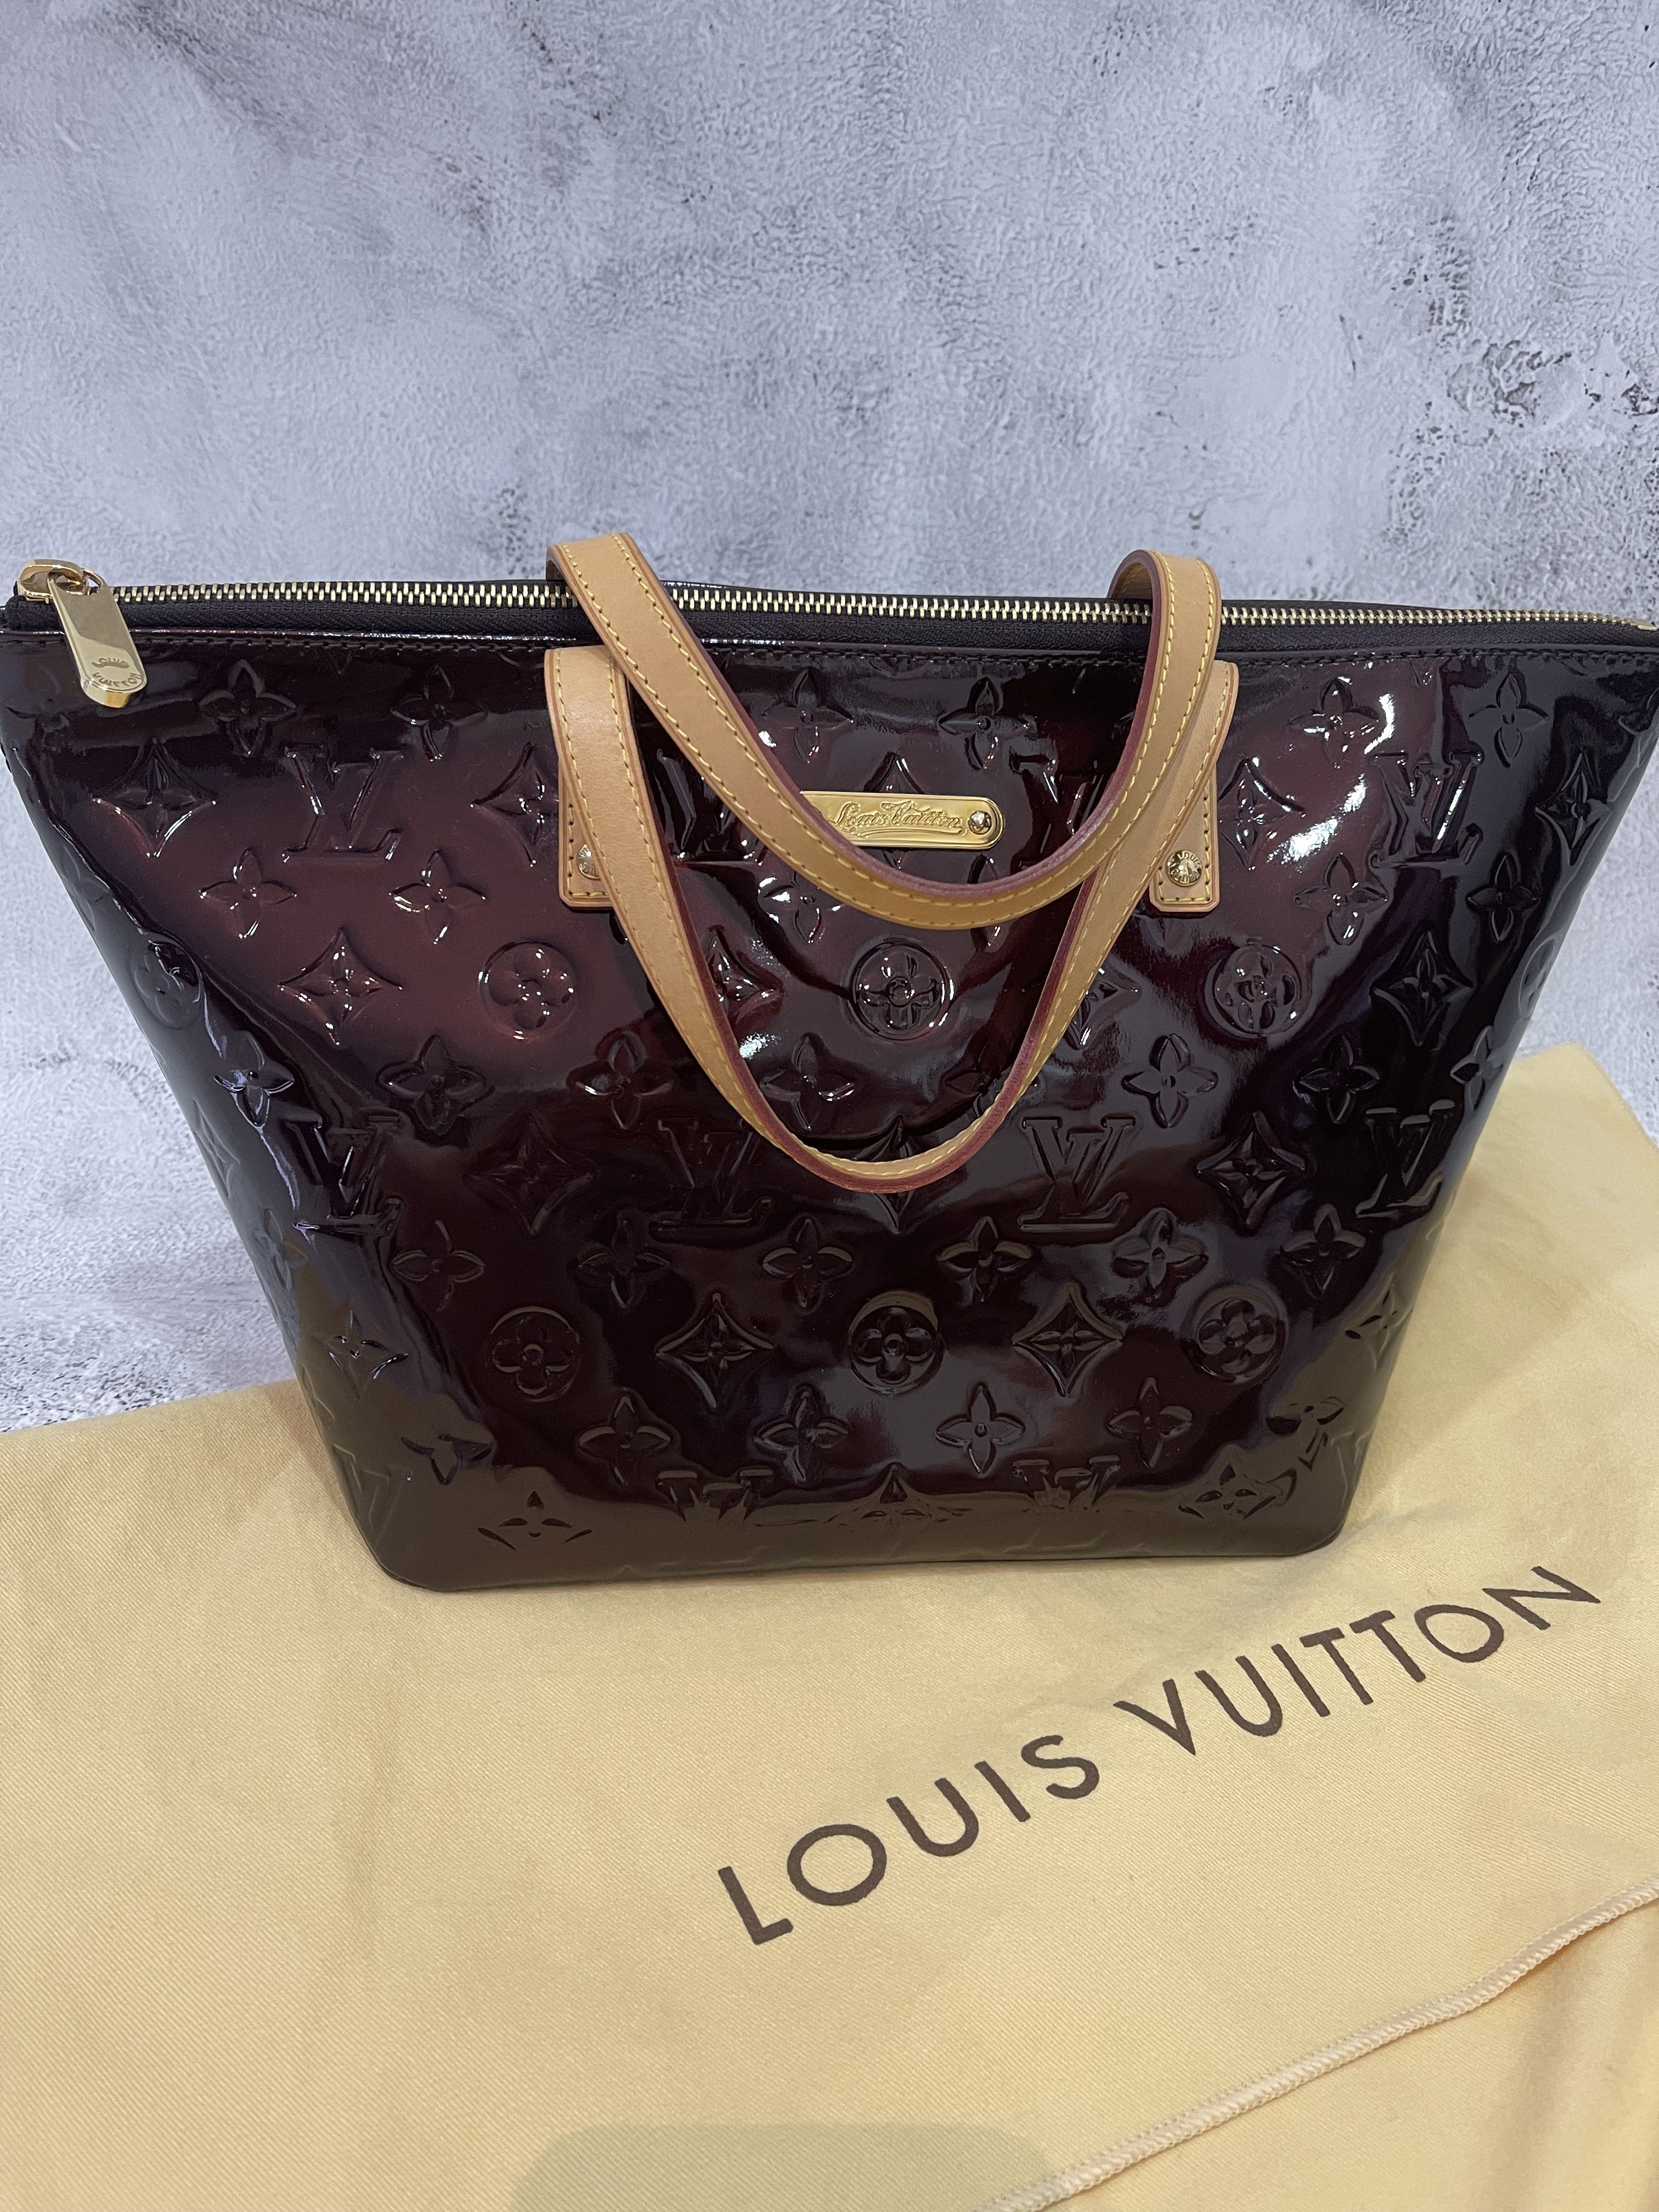 Review - Louis Vuitton Bellevue PM 